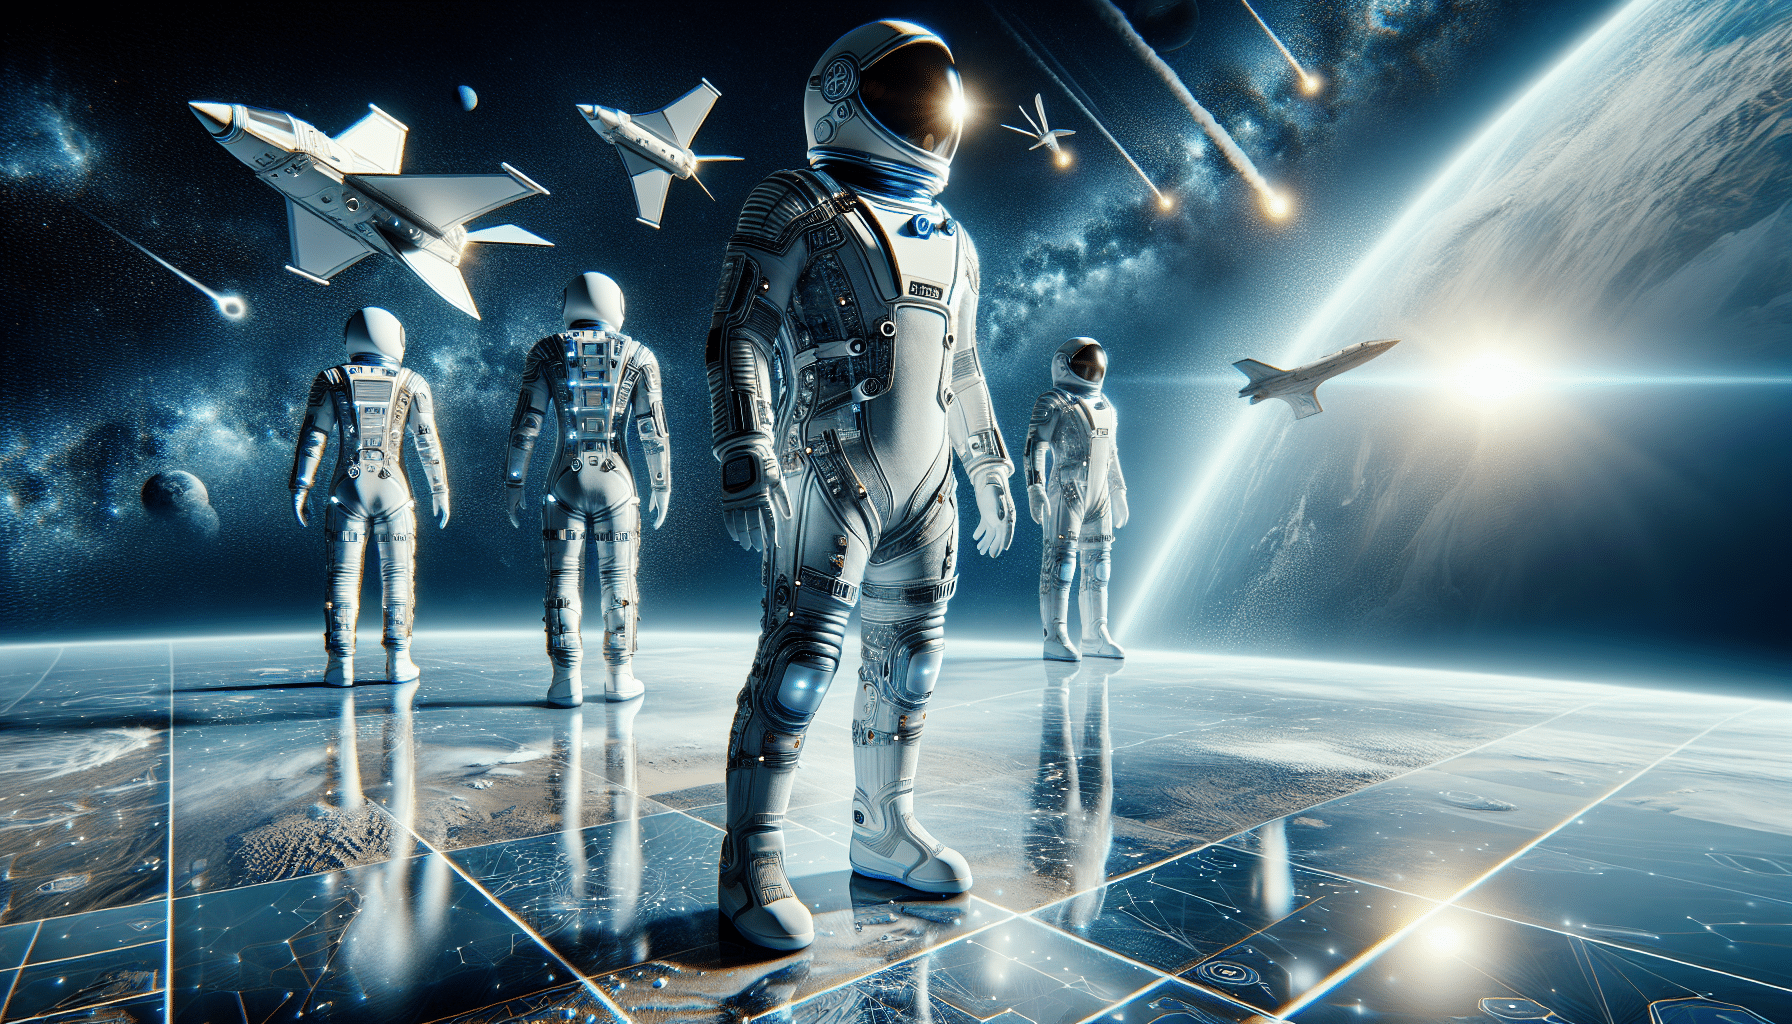 découvrez les tout nouveaux costumes spatiaux de spacex conçus pour les sorties dans le vide spatial.